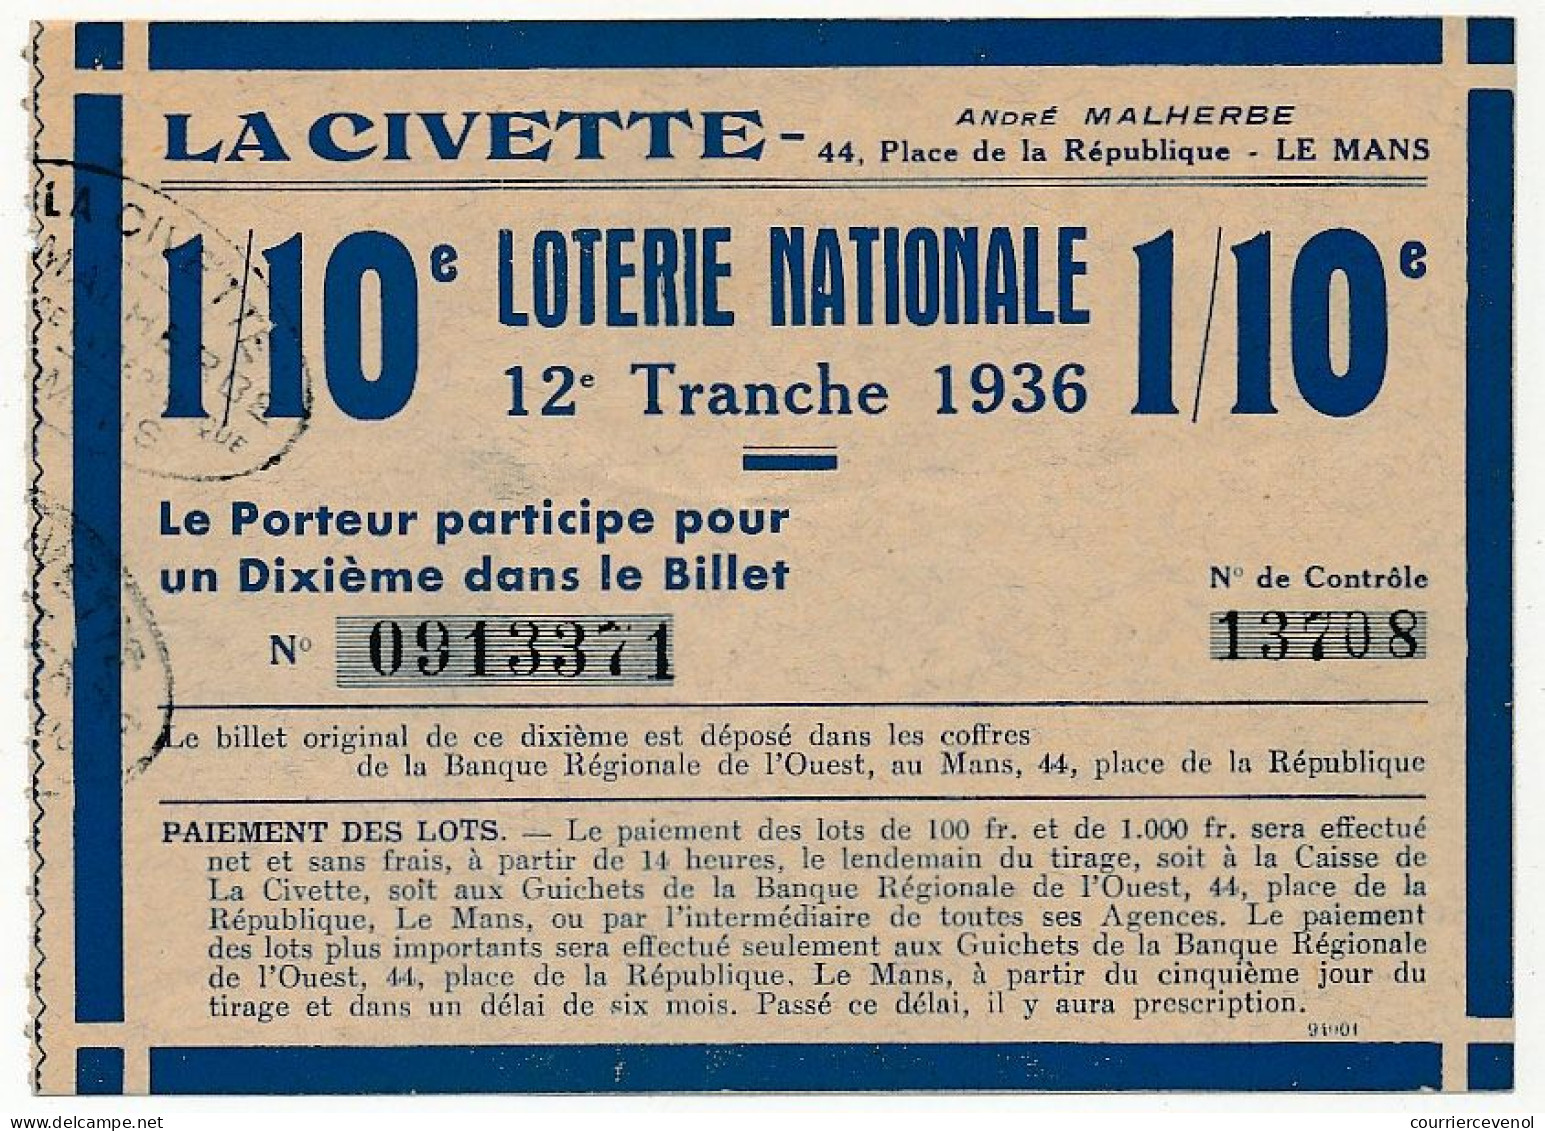 FRANCE - Loterie Nationale - La Civette (Le Mans) - 1/10ème - 12ème Tranche 1936 - Lottery Tickets